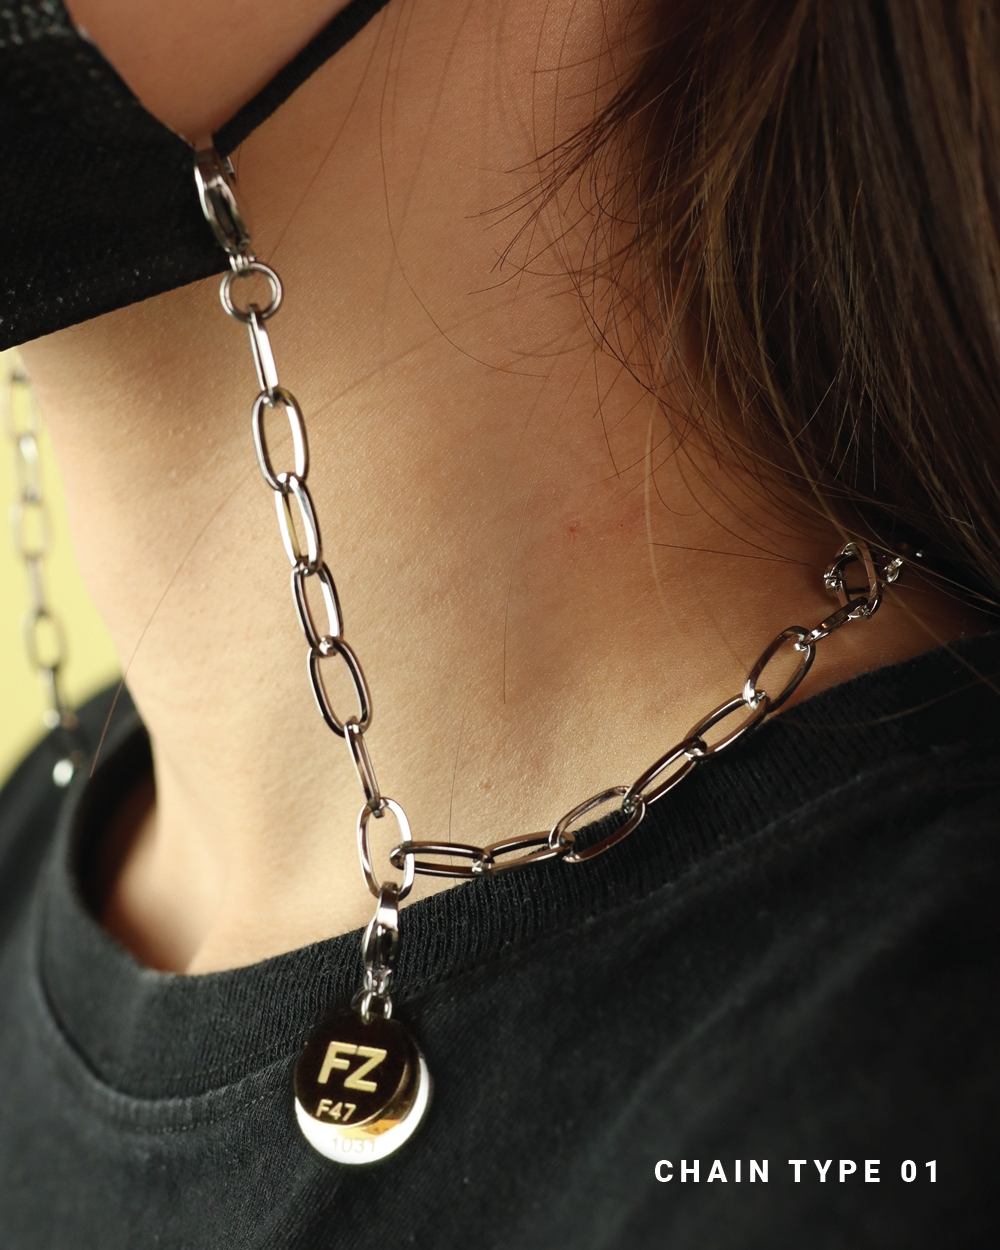 FZ Mask Chain x Necklace (FZ 口罩鏈 x 項鍊) - 3 Types (01 - 03)